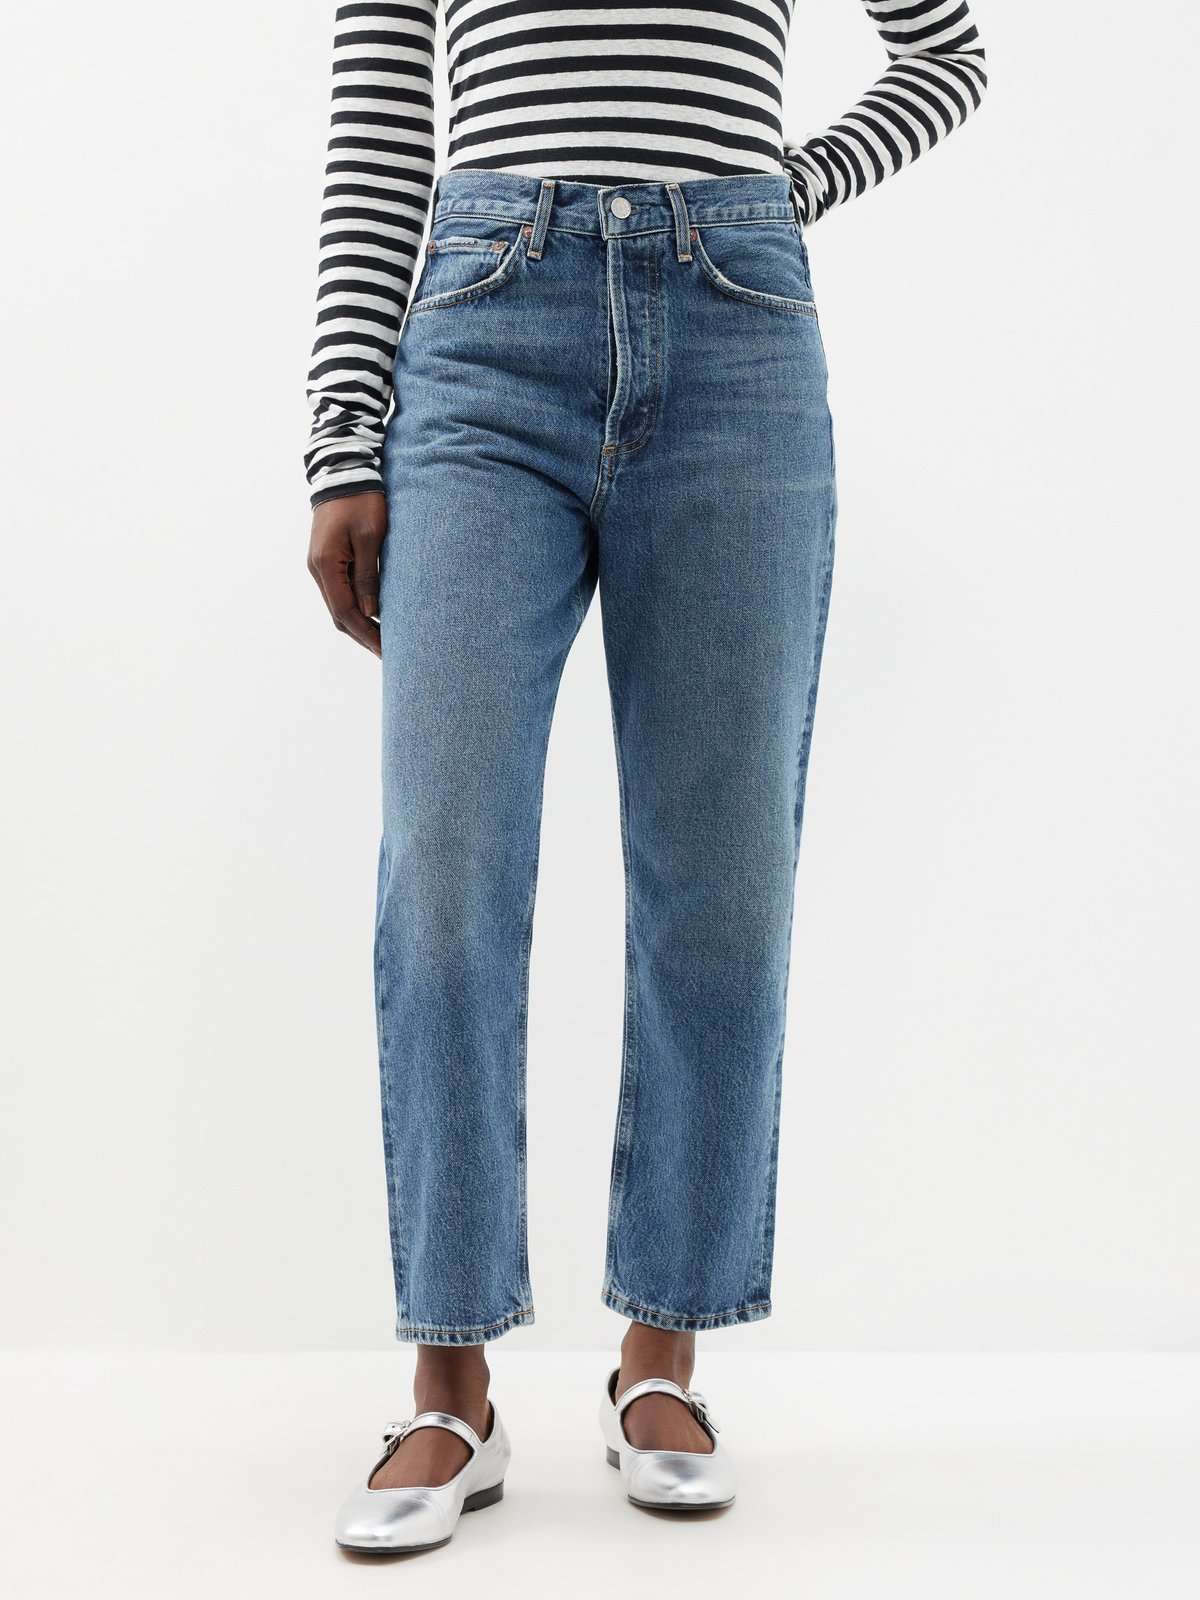 укороченные джинсы 90-х годов